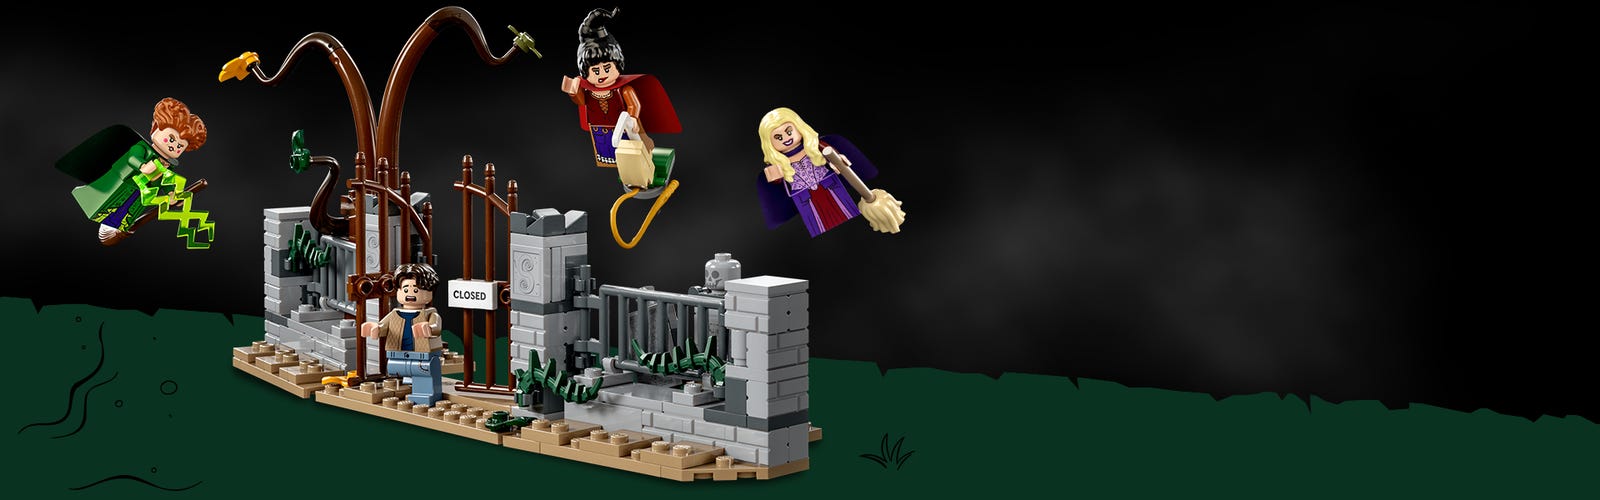 LEGO kockákból épült jelenet, melyben a temető látható a Hókusz pókusz című filmből, és a szereplők minifigurái repülnek felette